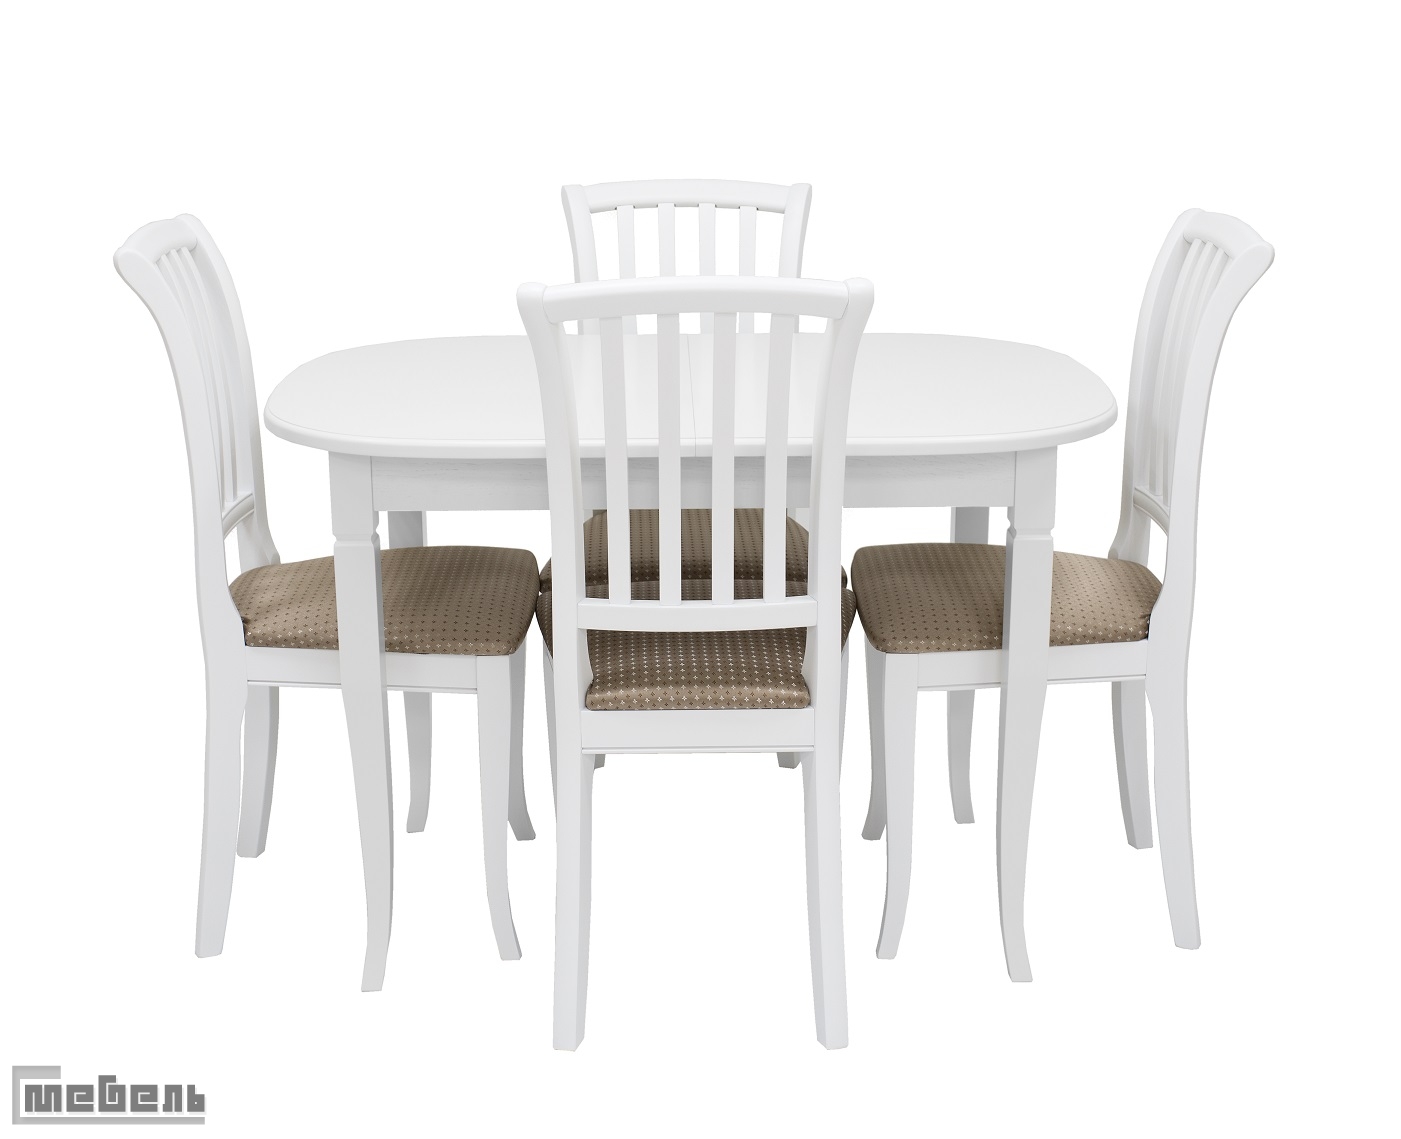 Обеденная группа "Аризона" (стол + 4 стула "Остин") цвет: Белый